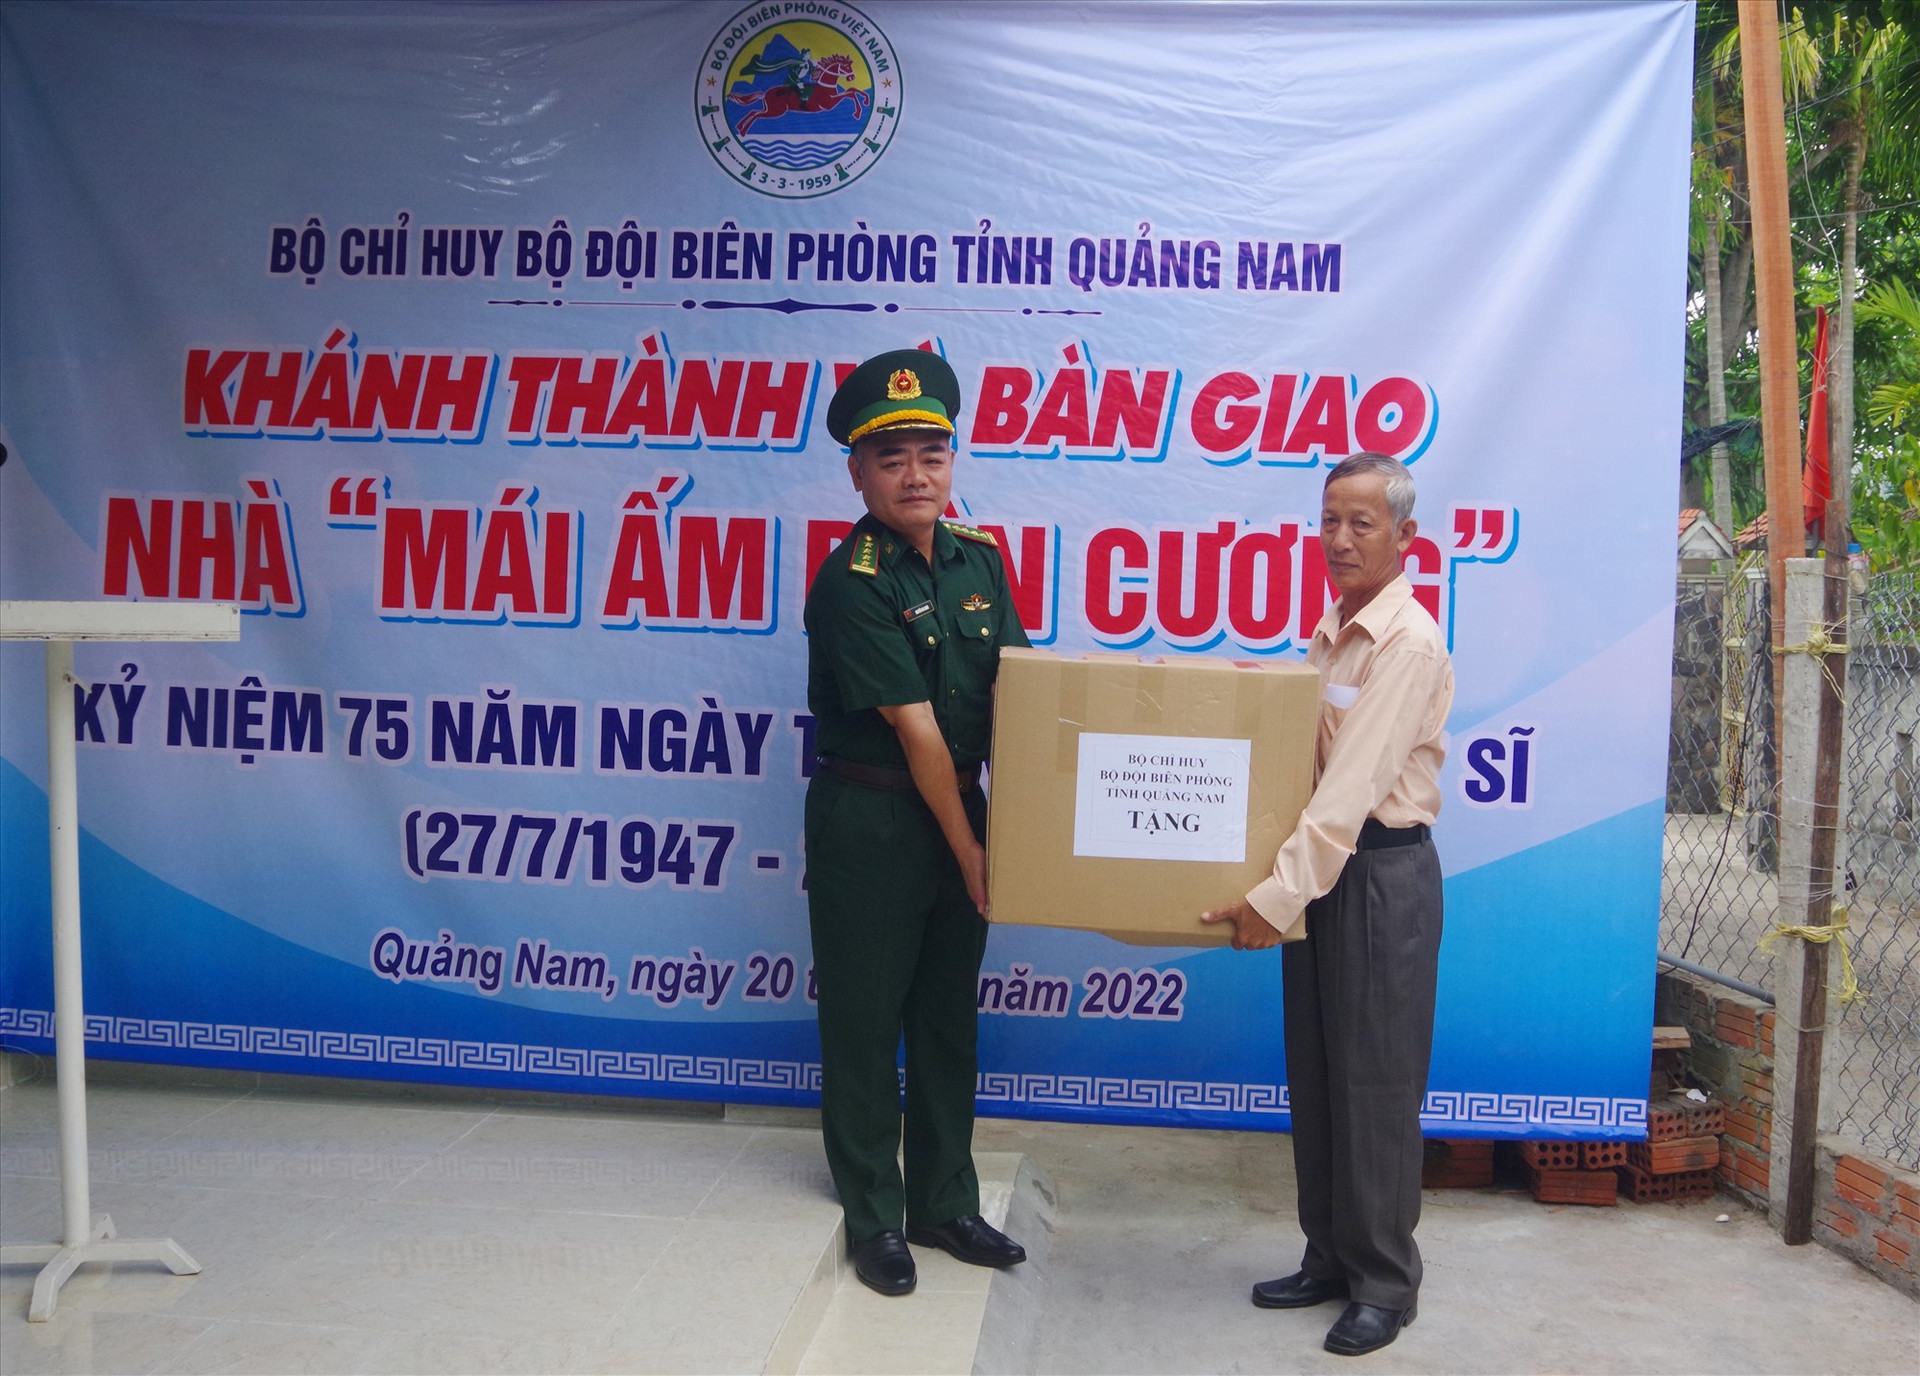 Đại tá Nguyễn Bá Hưng - Phó Chính ủy BĐBP tỉnh tặng quà gia đình ông Đinh Cư. Ảnh: HỒNG ANH